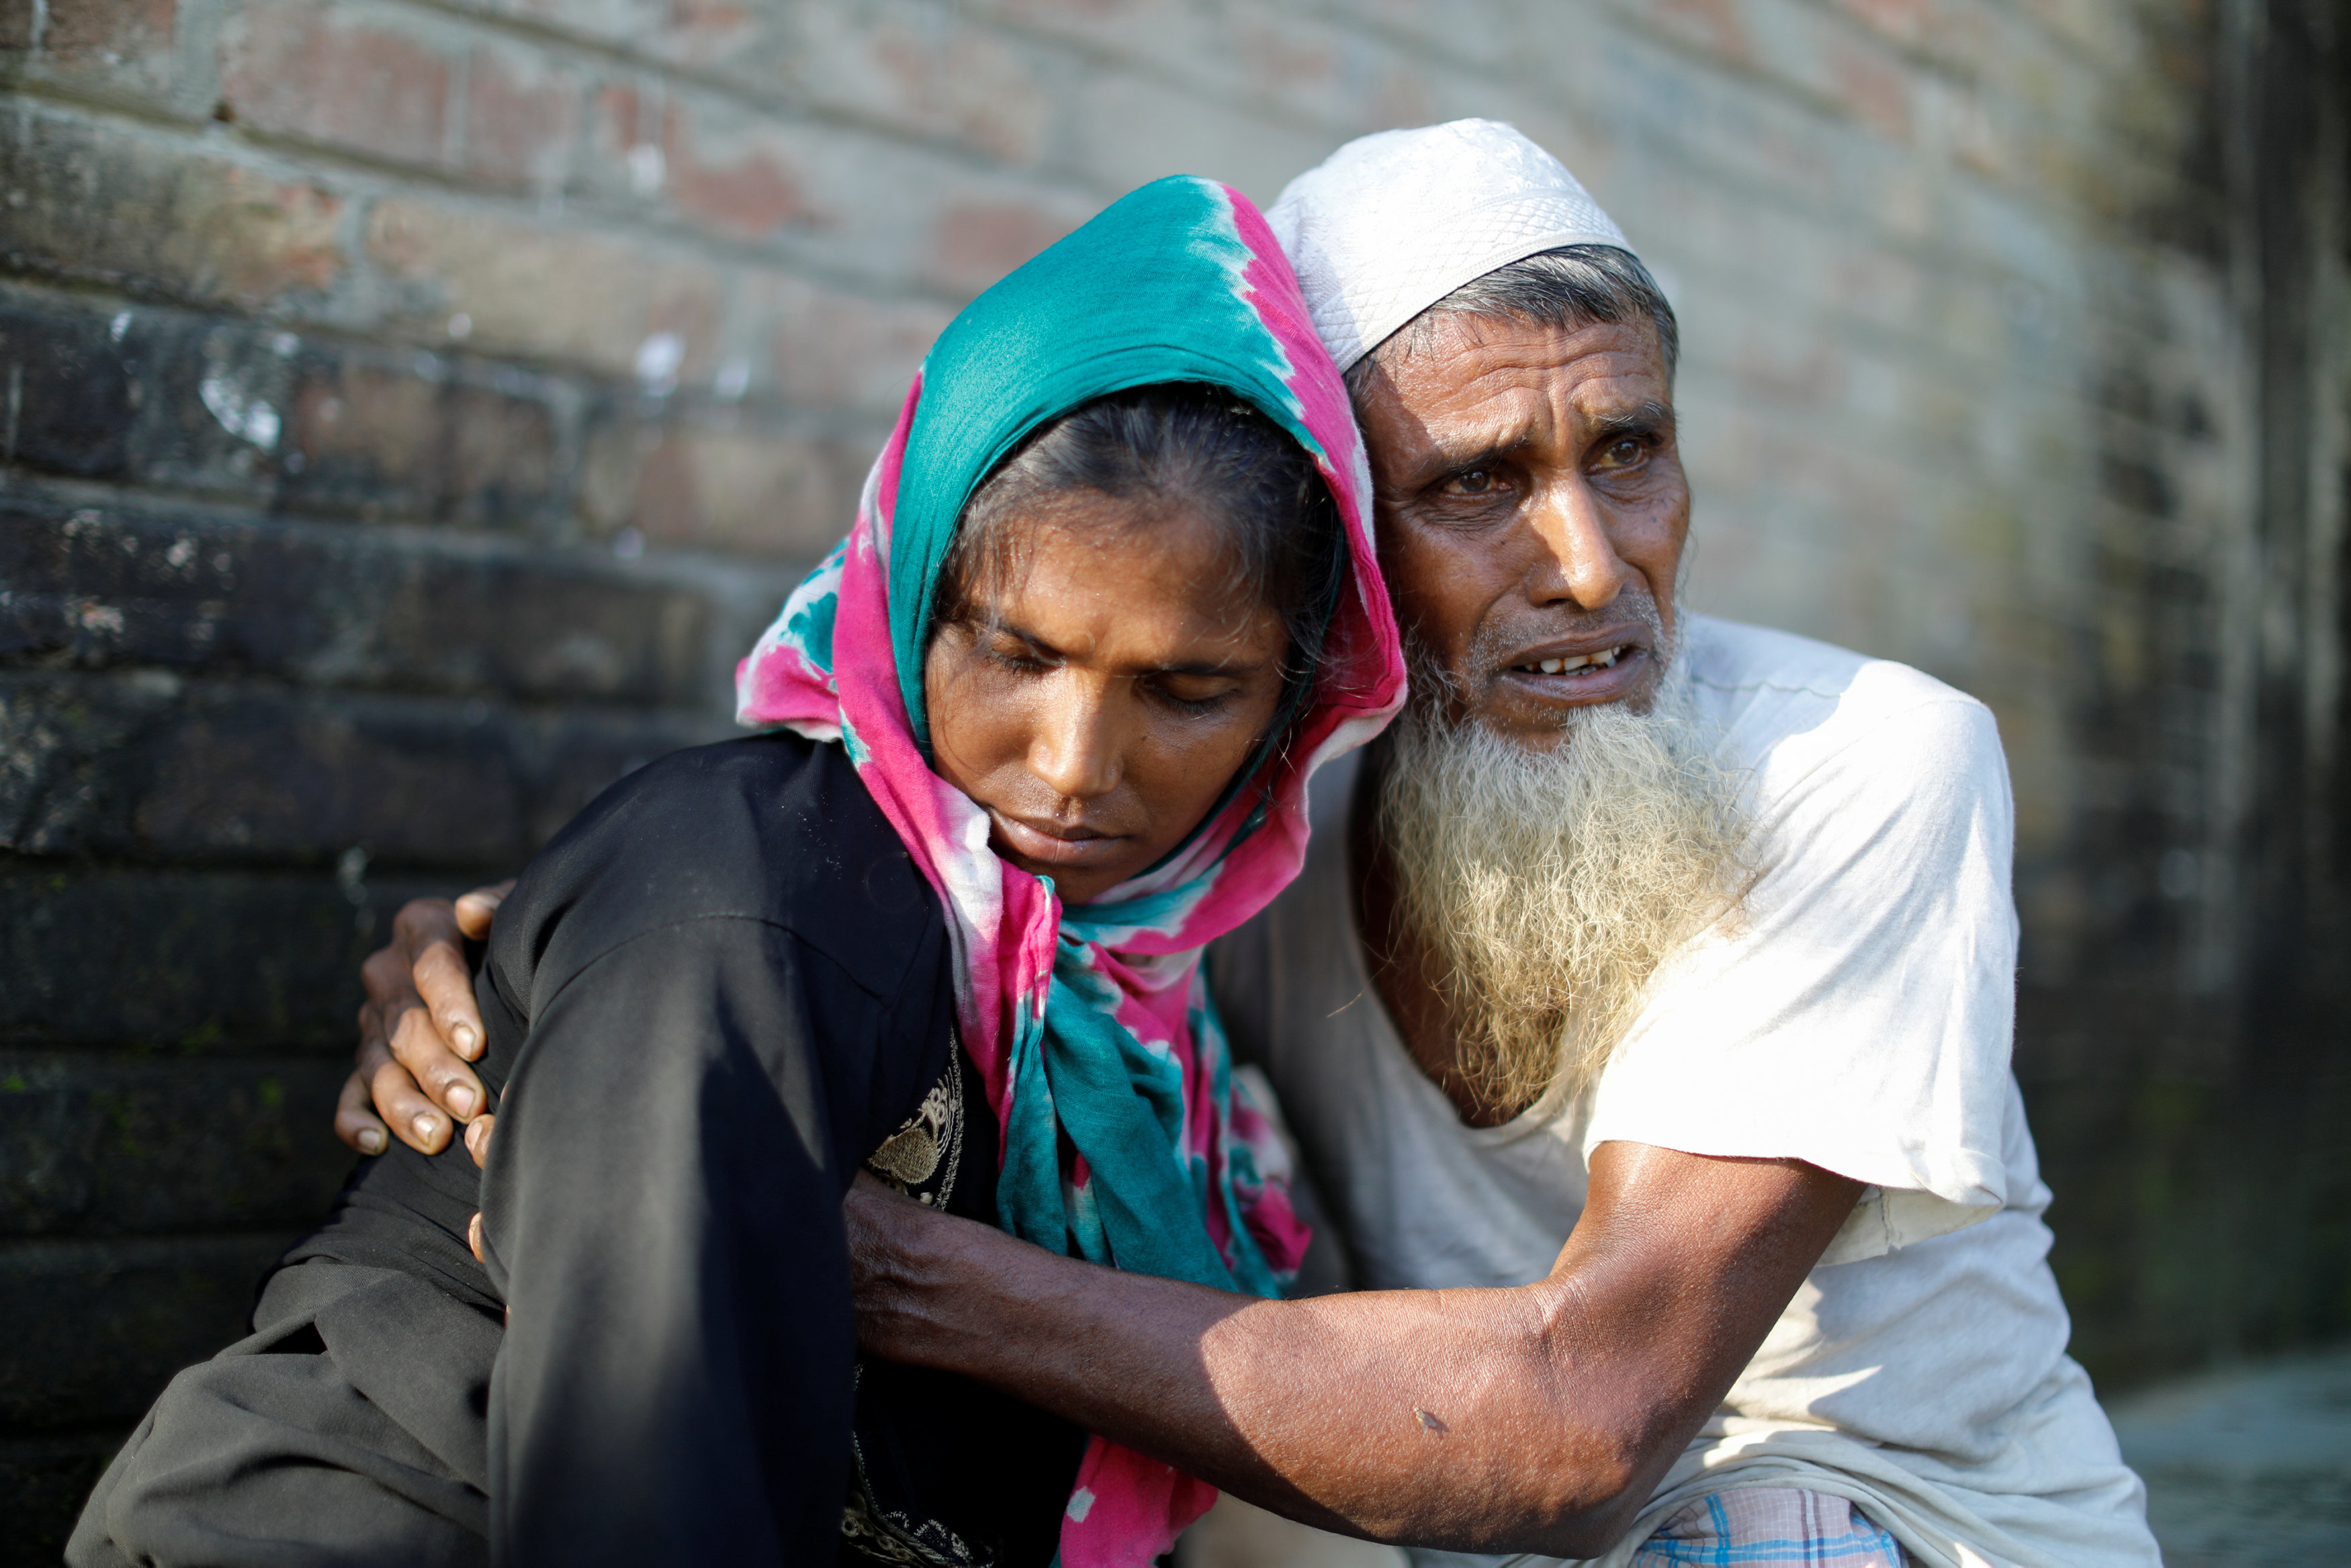 الرجل يحمل ابنته ذات الـ 28 عاما بسبب العنف ضدهم فى بورما